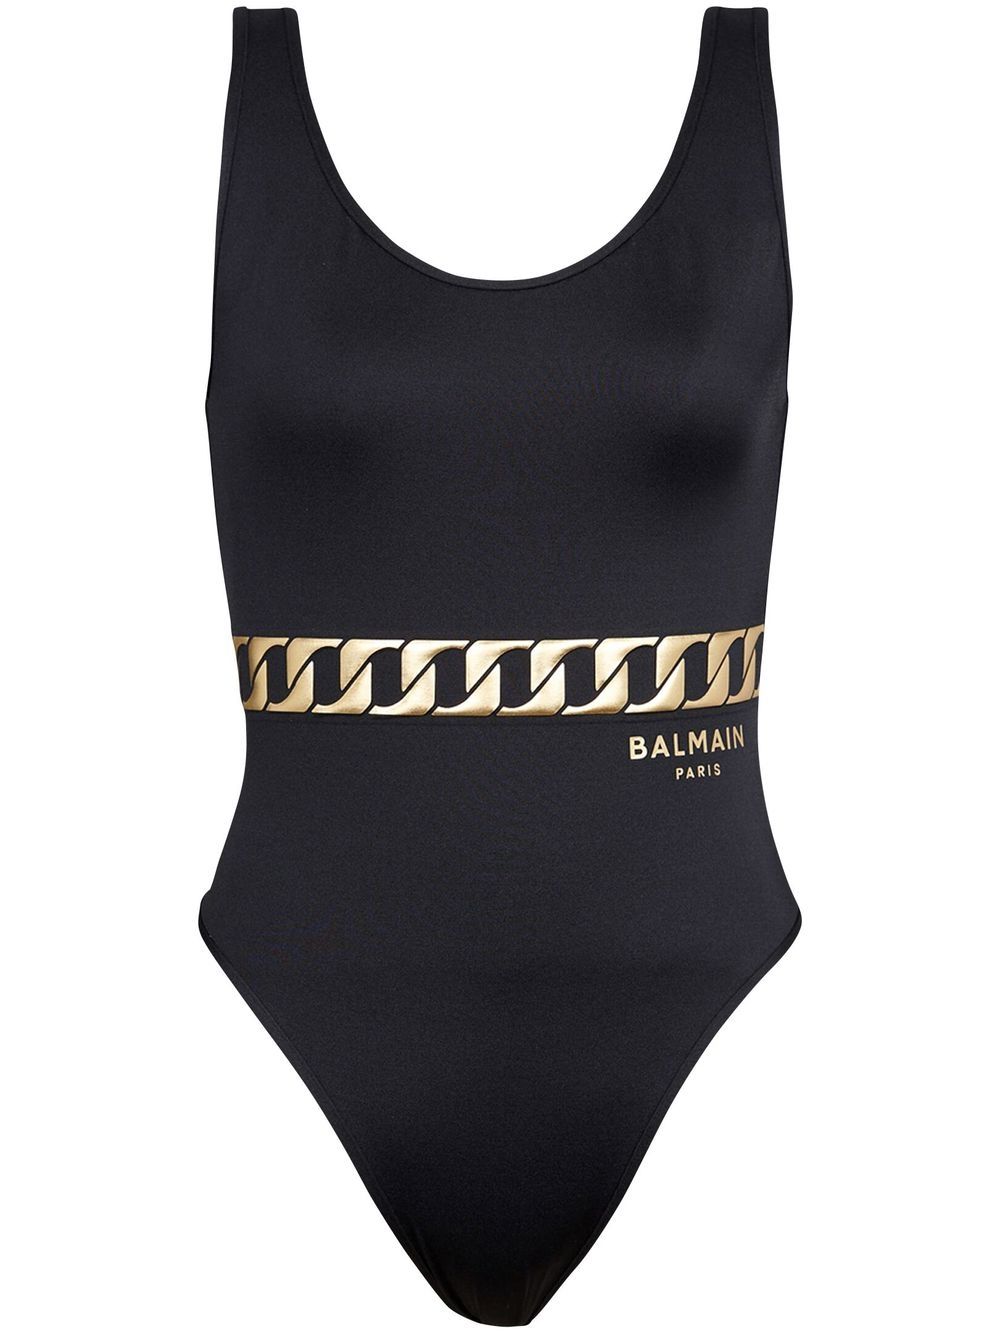 Balmain chain link print swimsuit - Black von Balmain